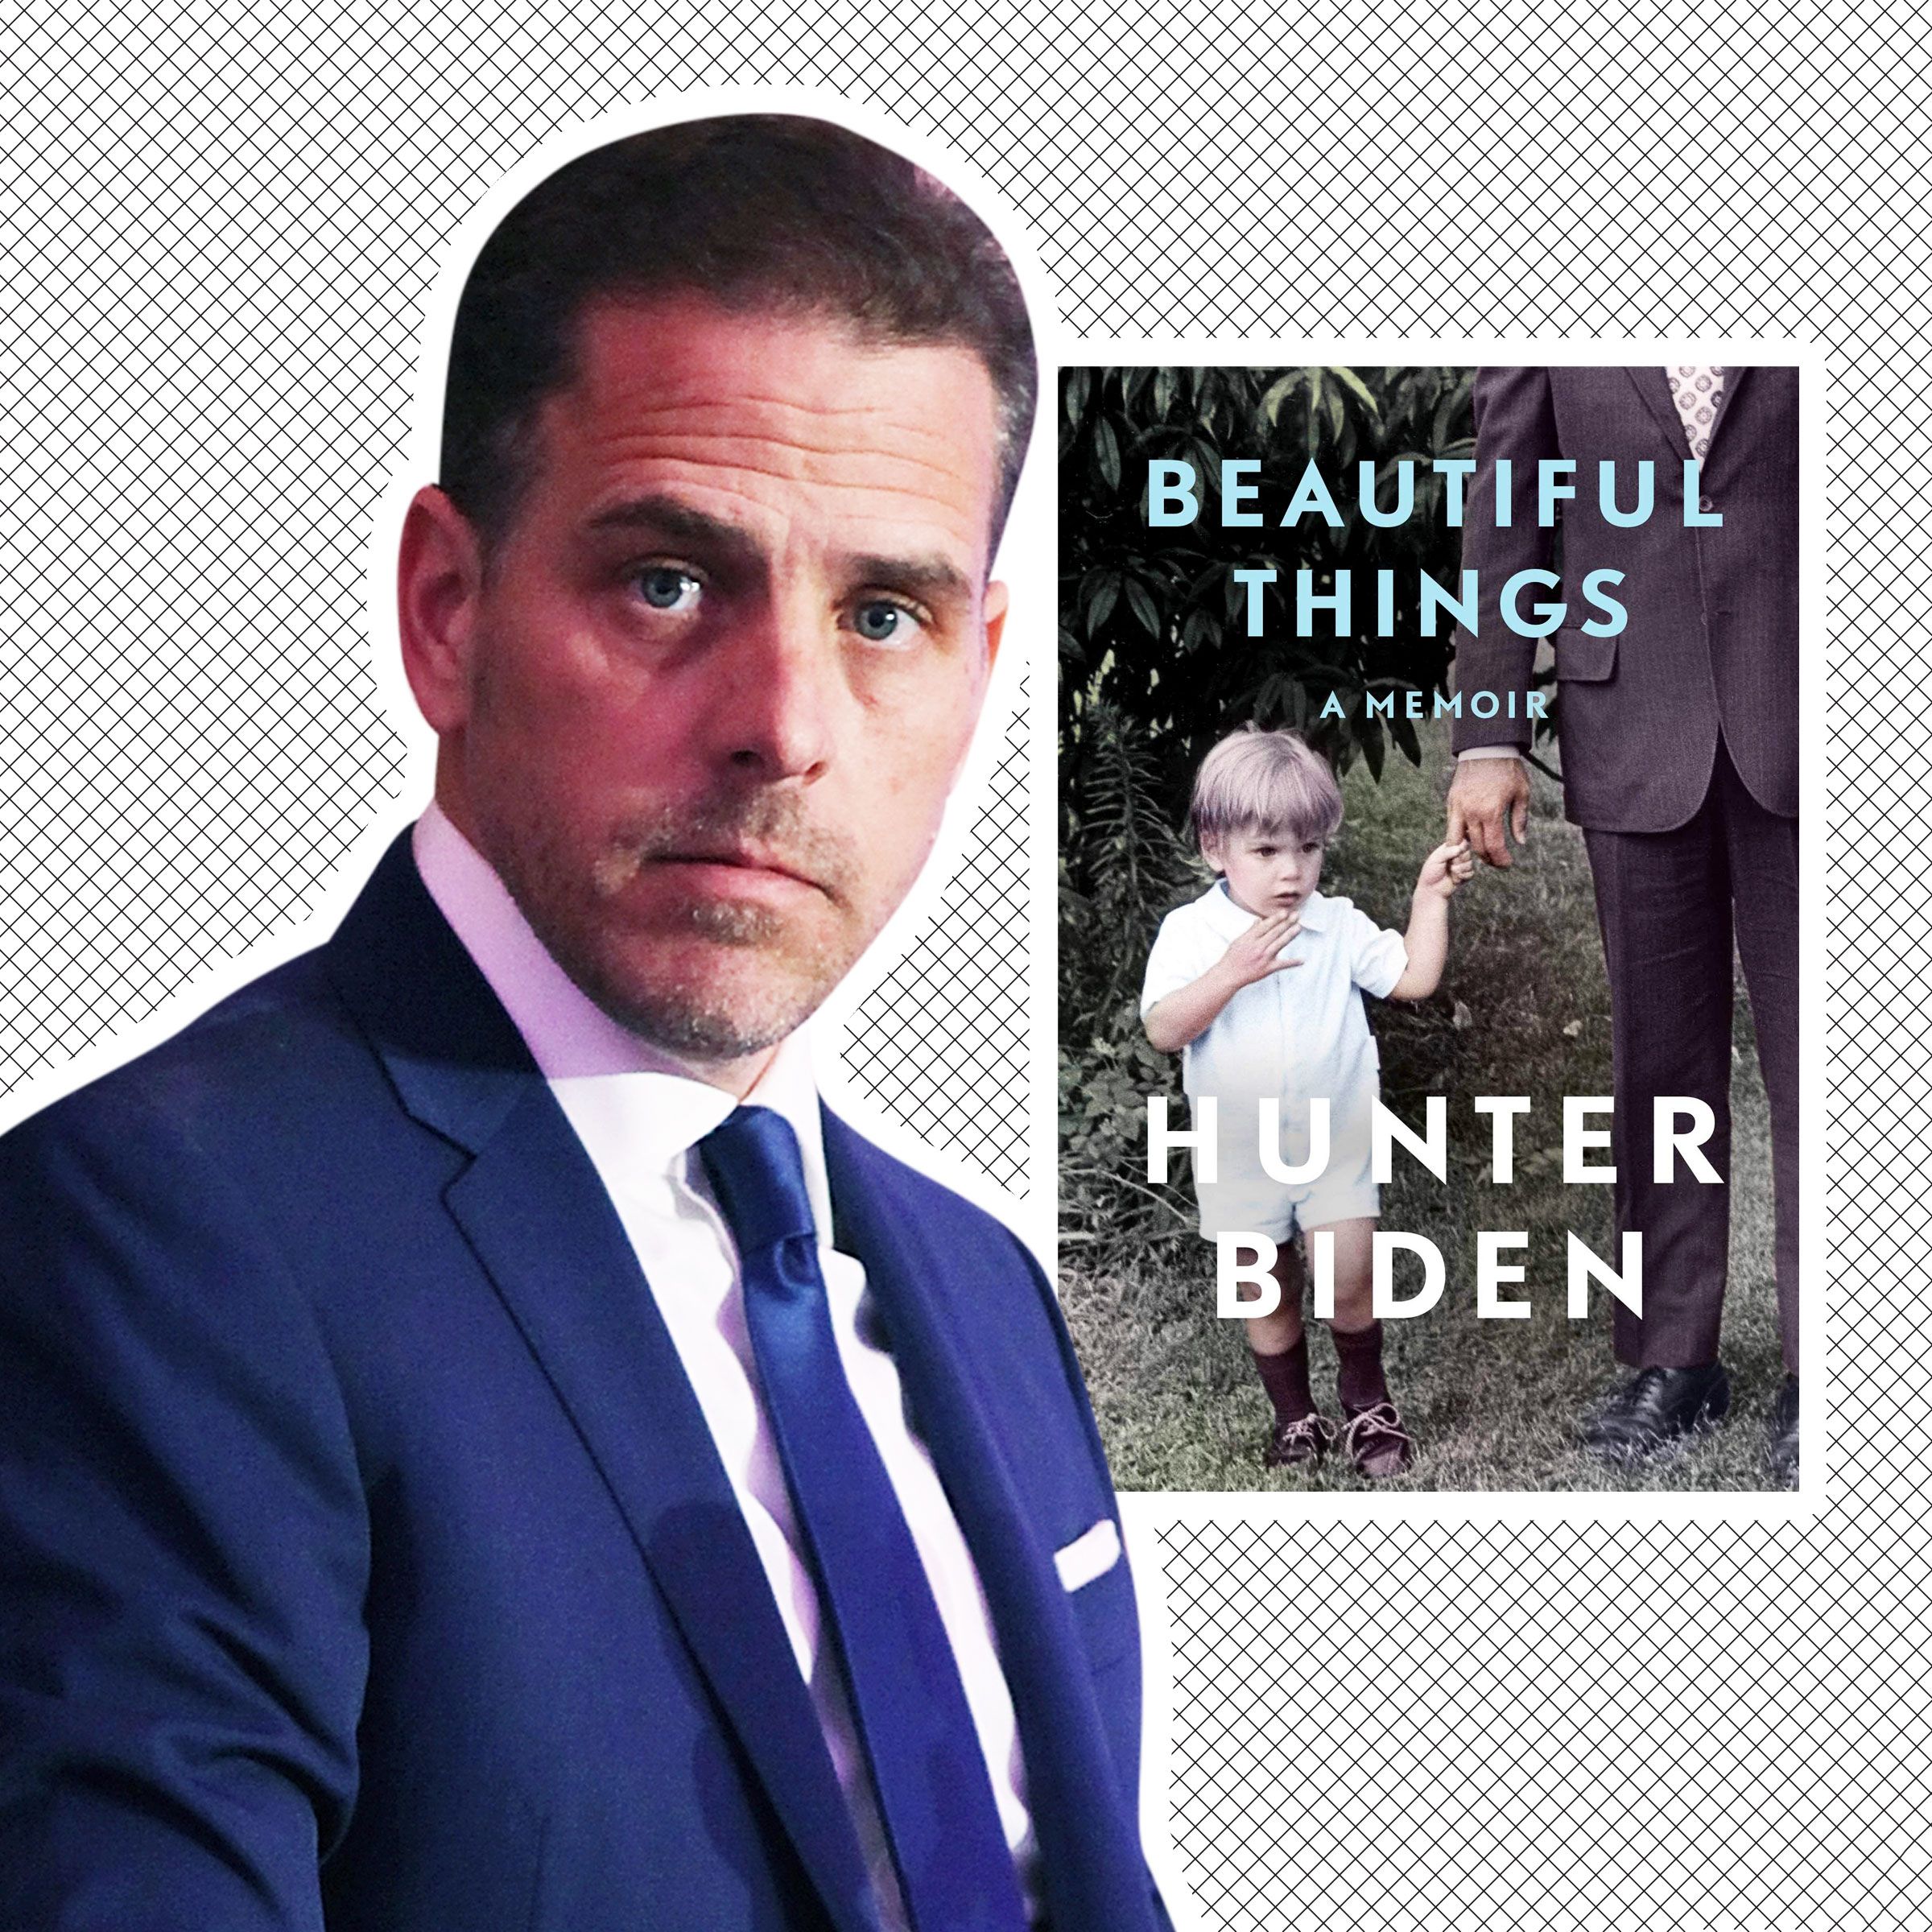 2400px x 2400px - Hunter Biden 'Beautiful Things': Review